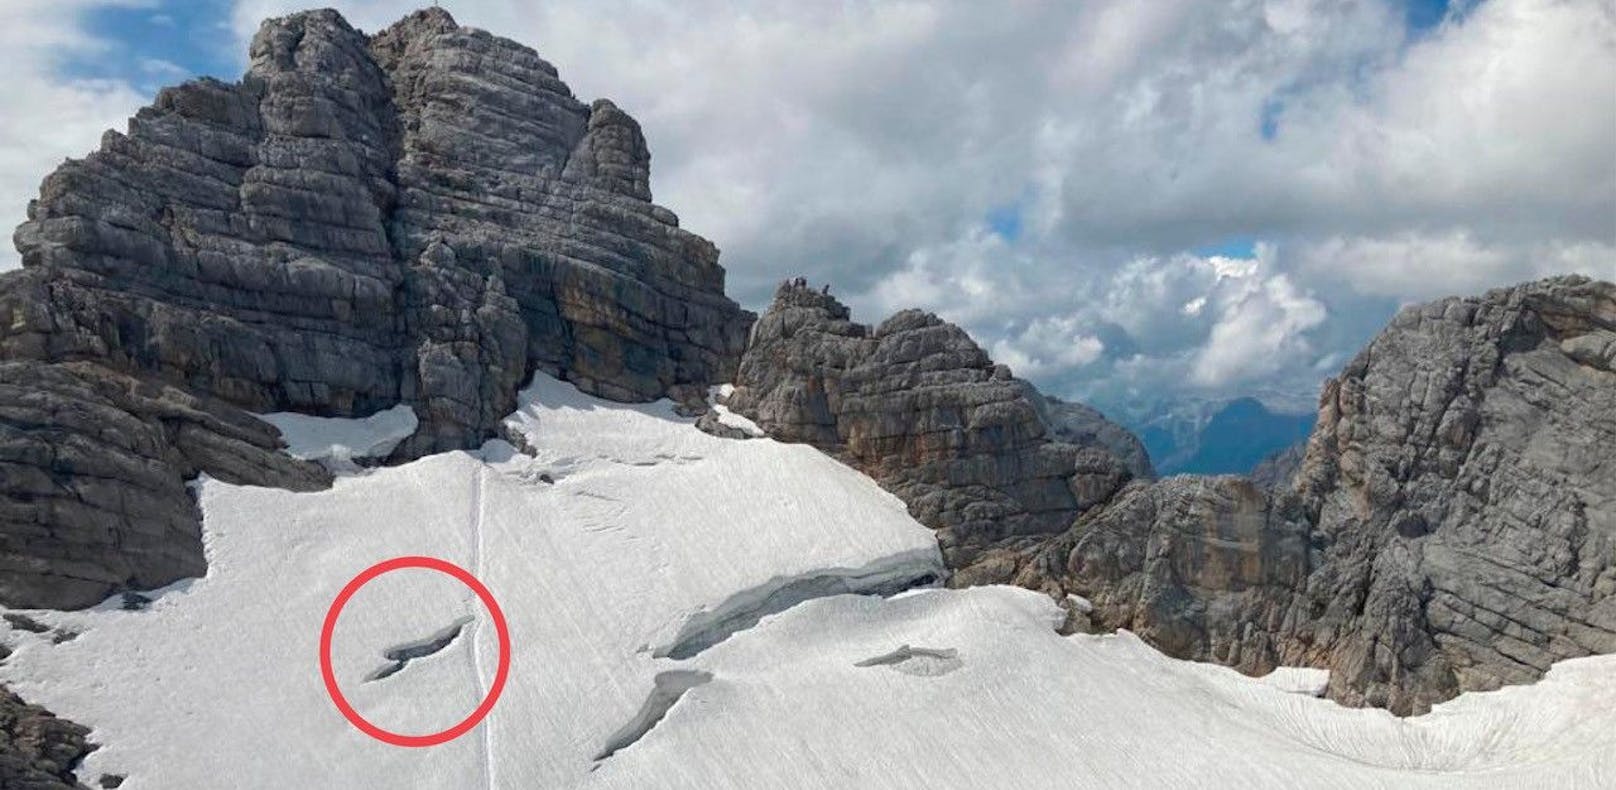 Die Frau konnte mit dem Hubschrauber aus dieser Gletscherspalte gerettet werden.